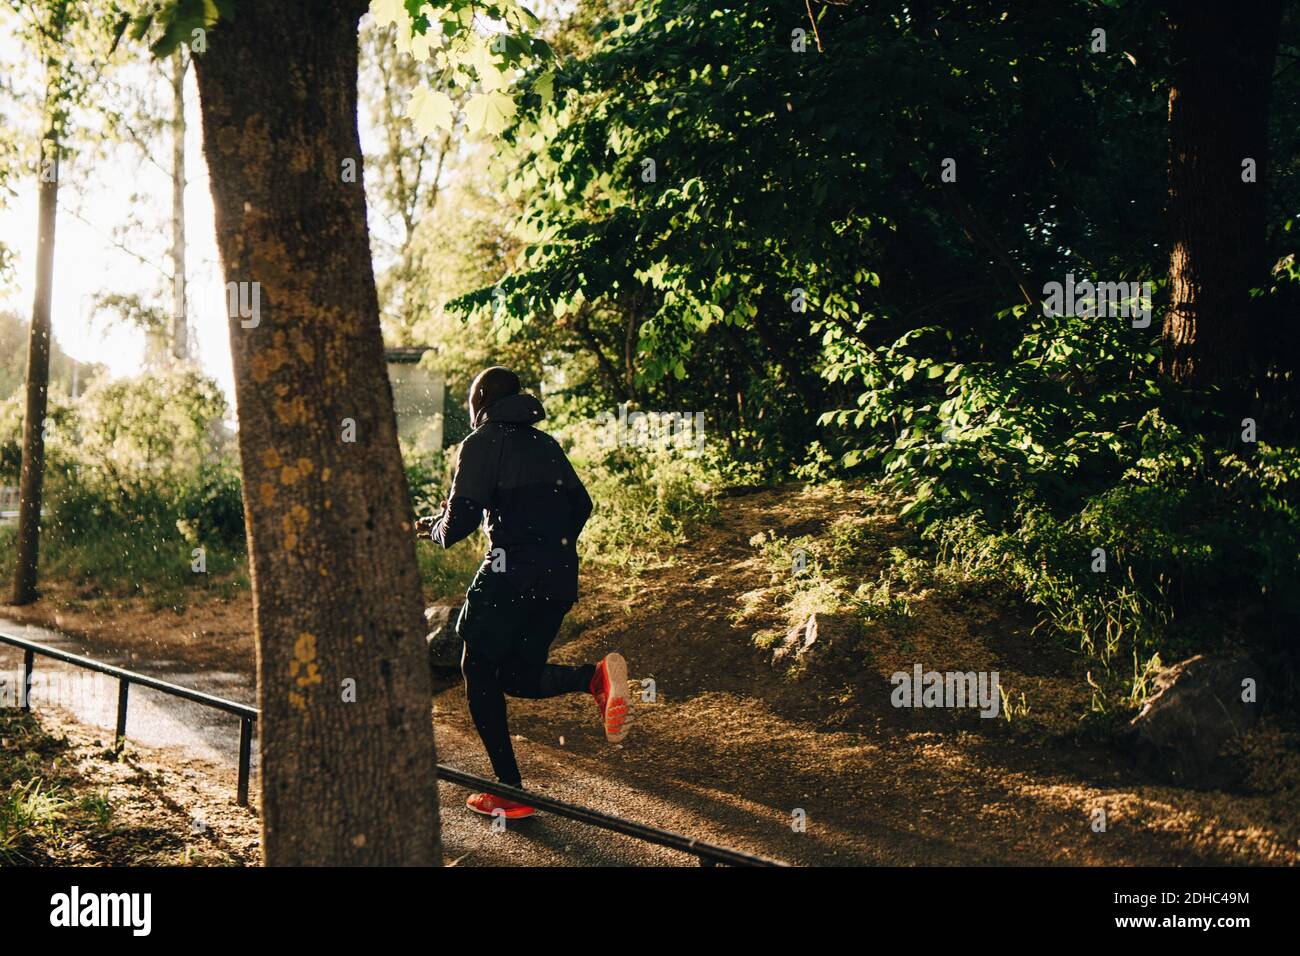 Pleine longueur d'athlète masculin qui court sur une piste de jogging dans le parc Banque D'Images